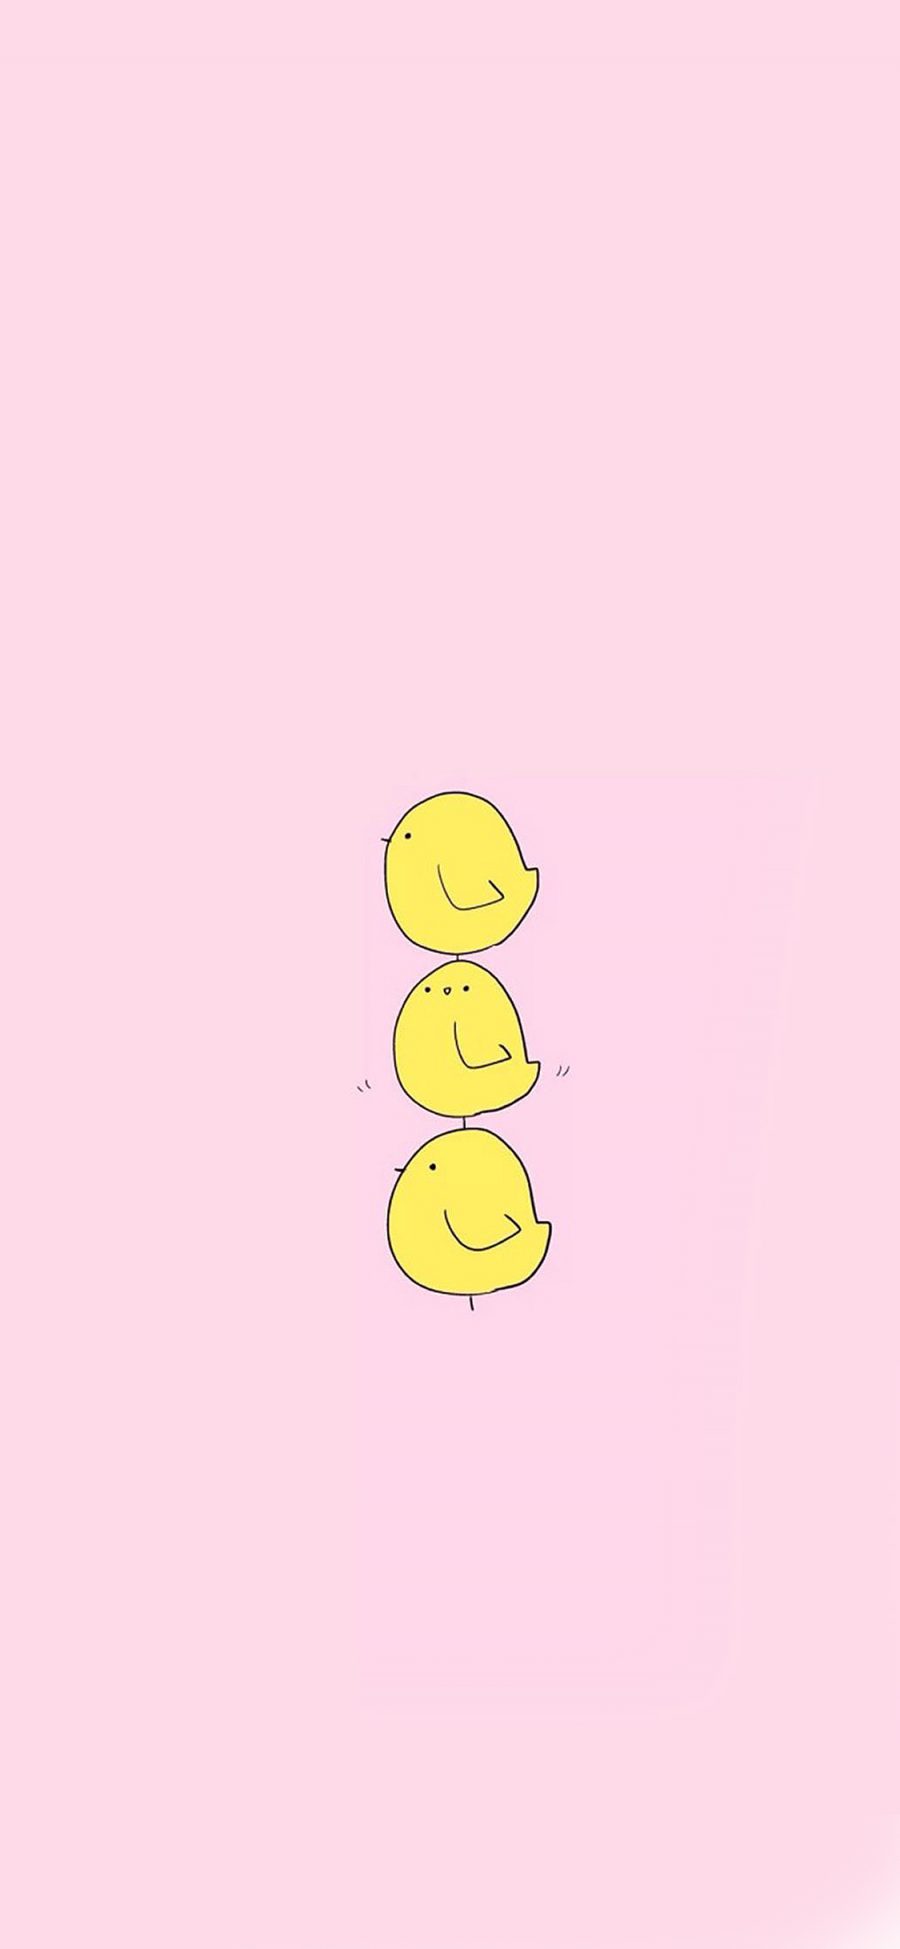 [2436×1125]三只小黄鸡可爱卡通 苹果手机动漫壁纸图片